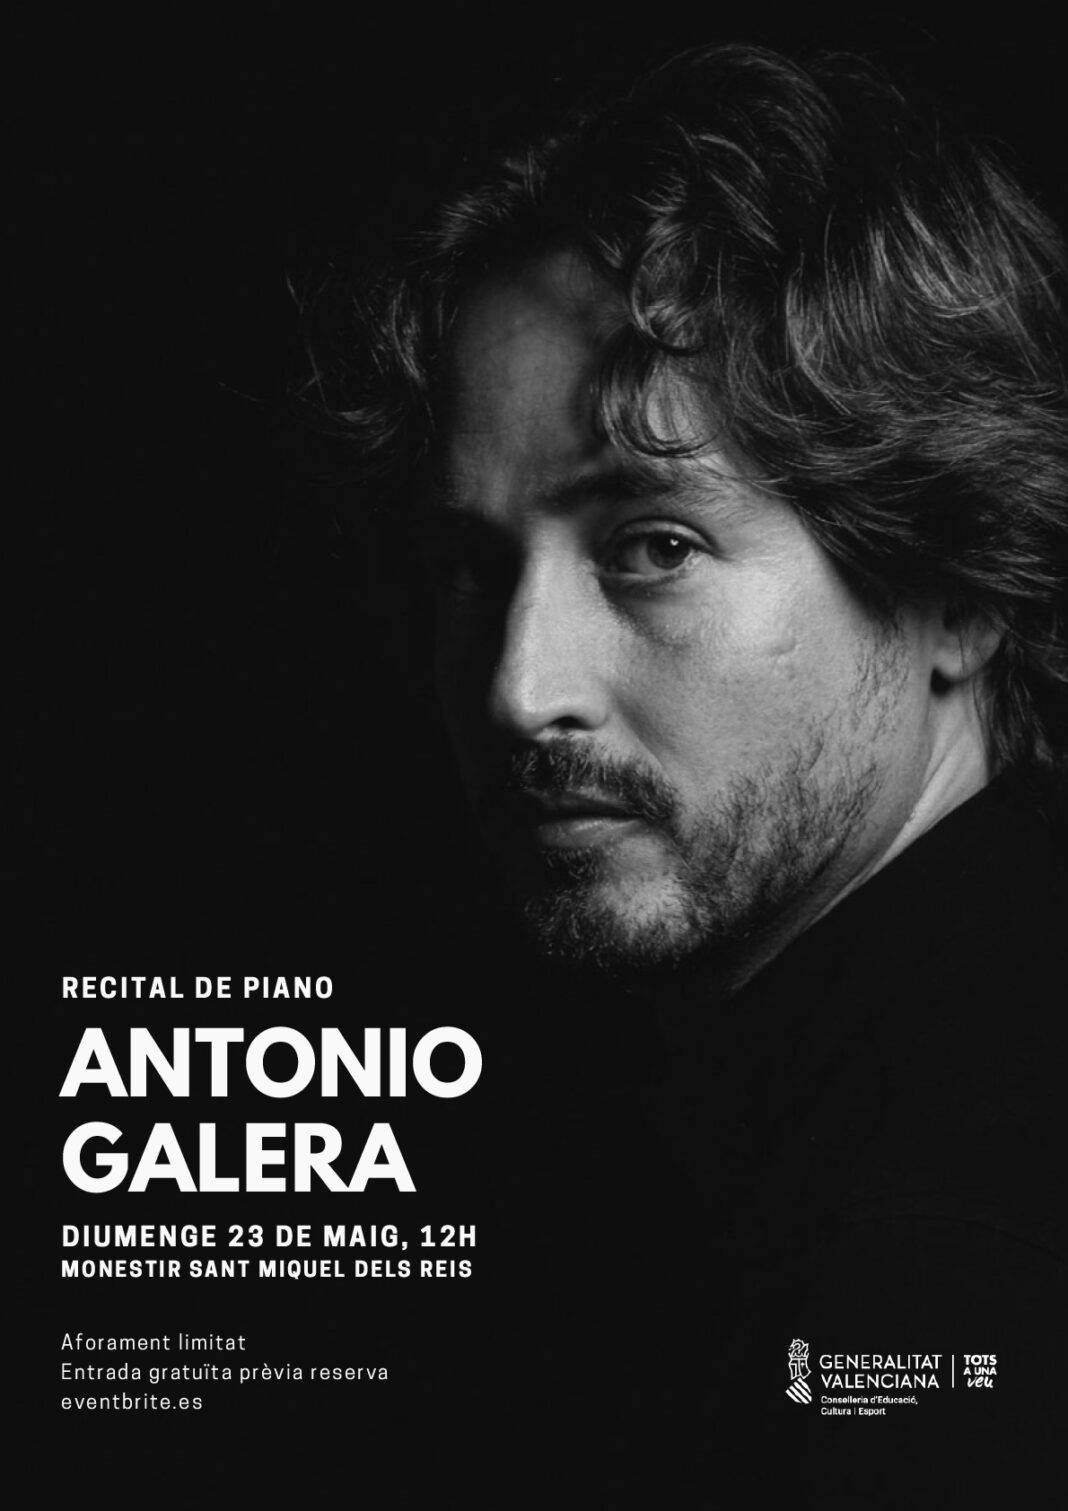 Antonio Galera